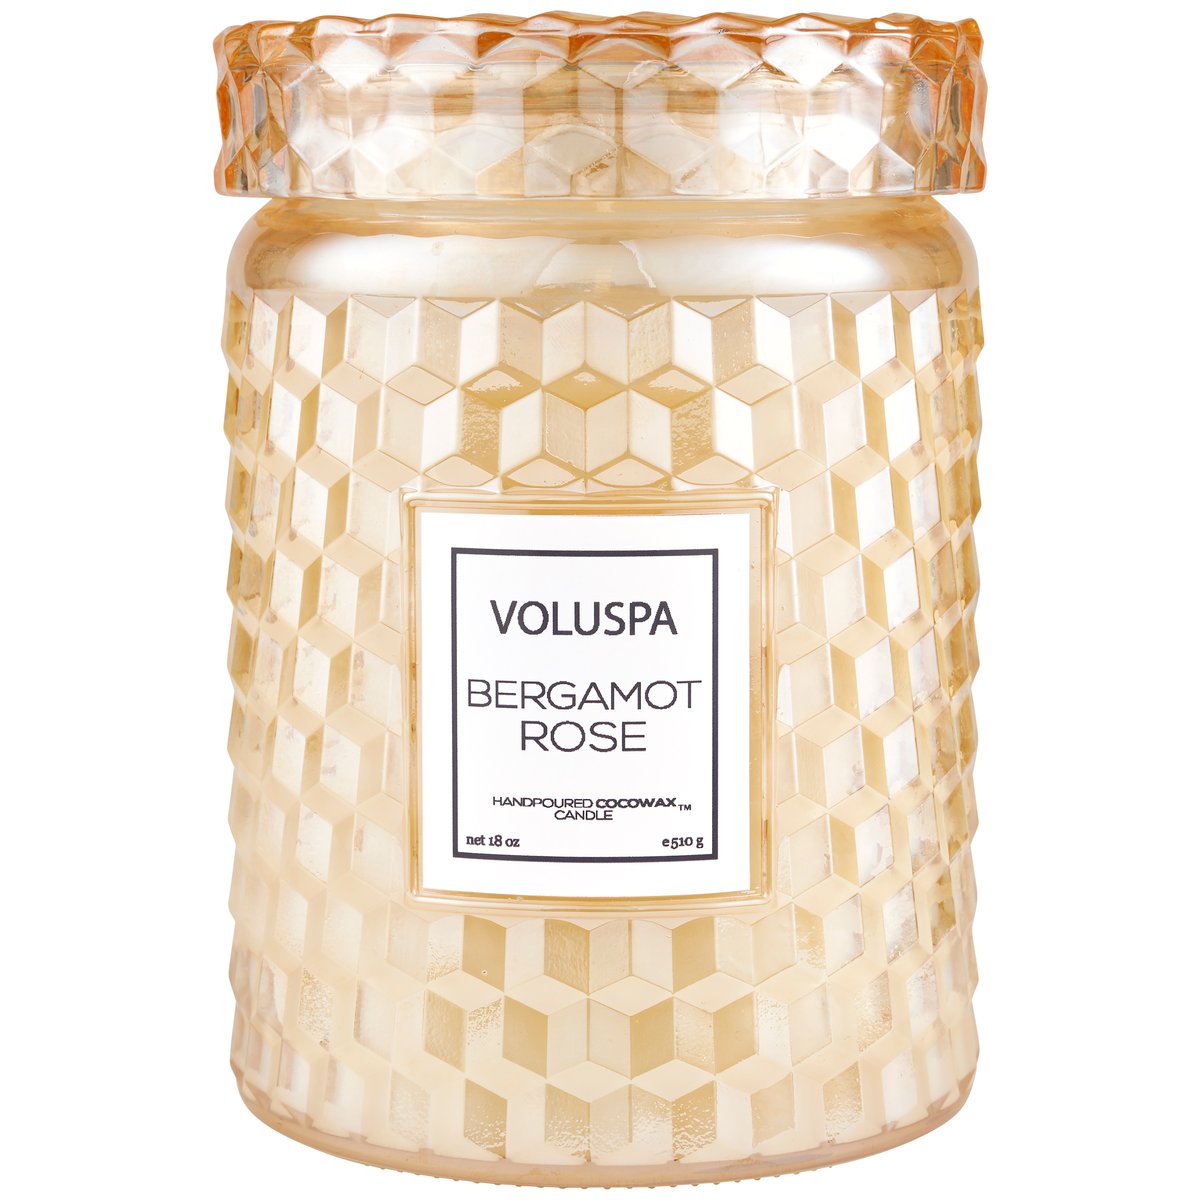 Voluspa - Bergamot Rose - Large Jar Candle